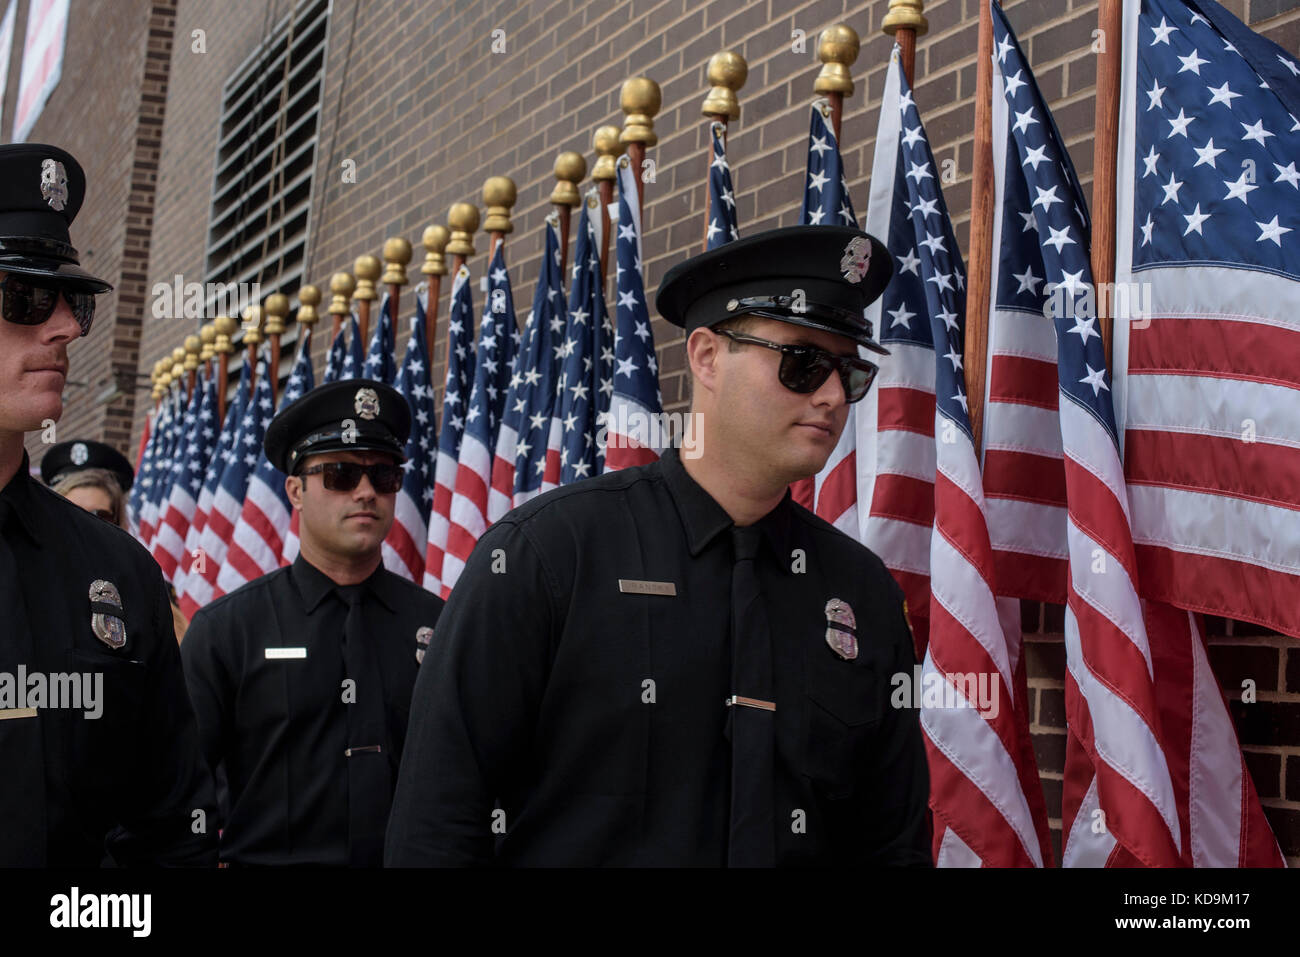 Des pompiers et policiers new yorkais revenant d'une cérémonie. Foto Stock